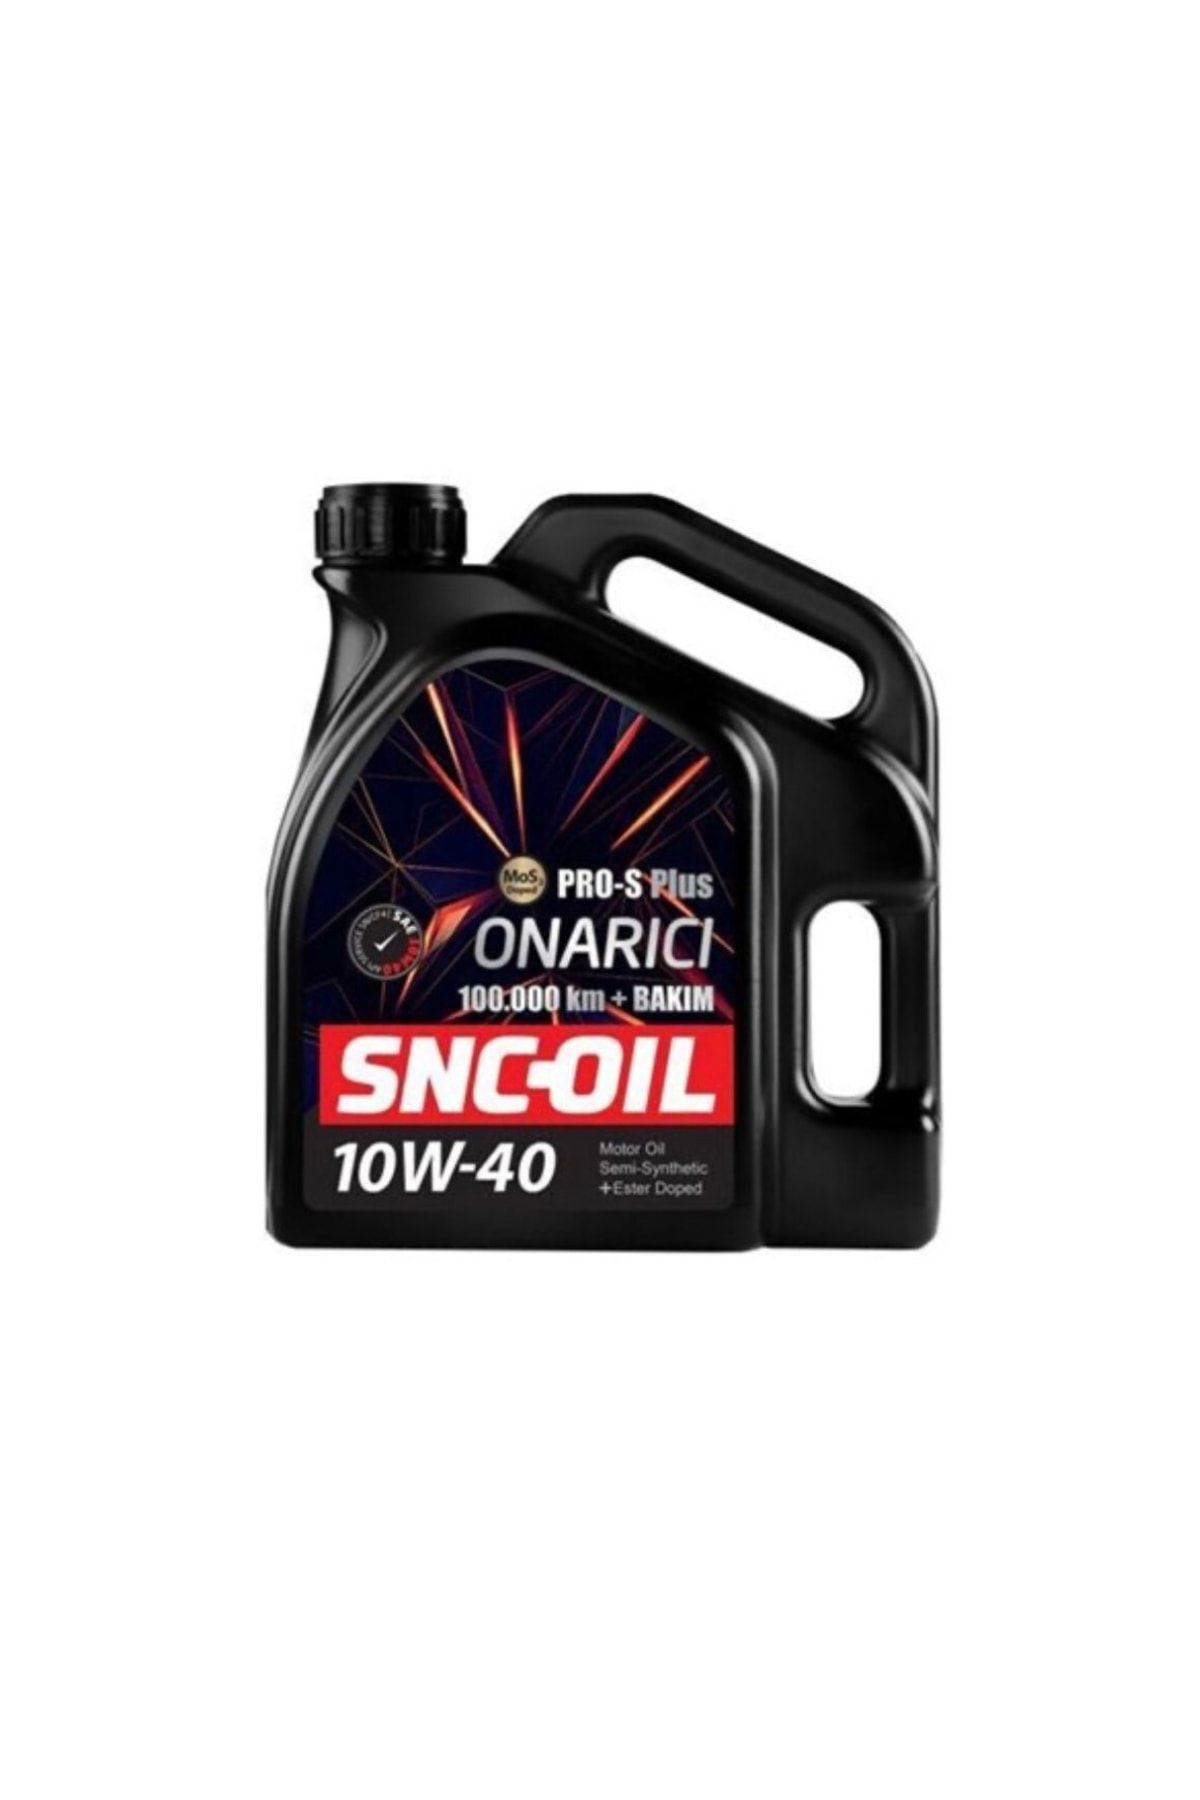 snc Oil 100.000km+ Onarıcı Yağ 10w-40 (4litre) Motor Yağı